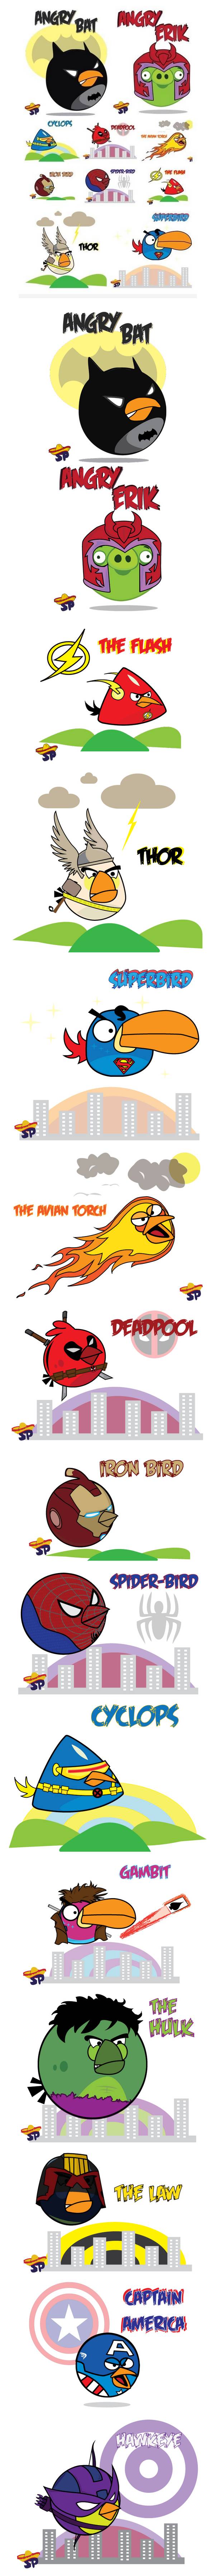 Angry Birds transformados en Superhéroes #Humor gráfico 1